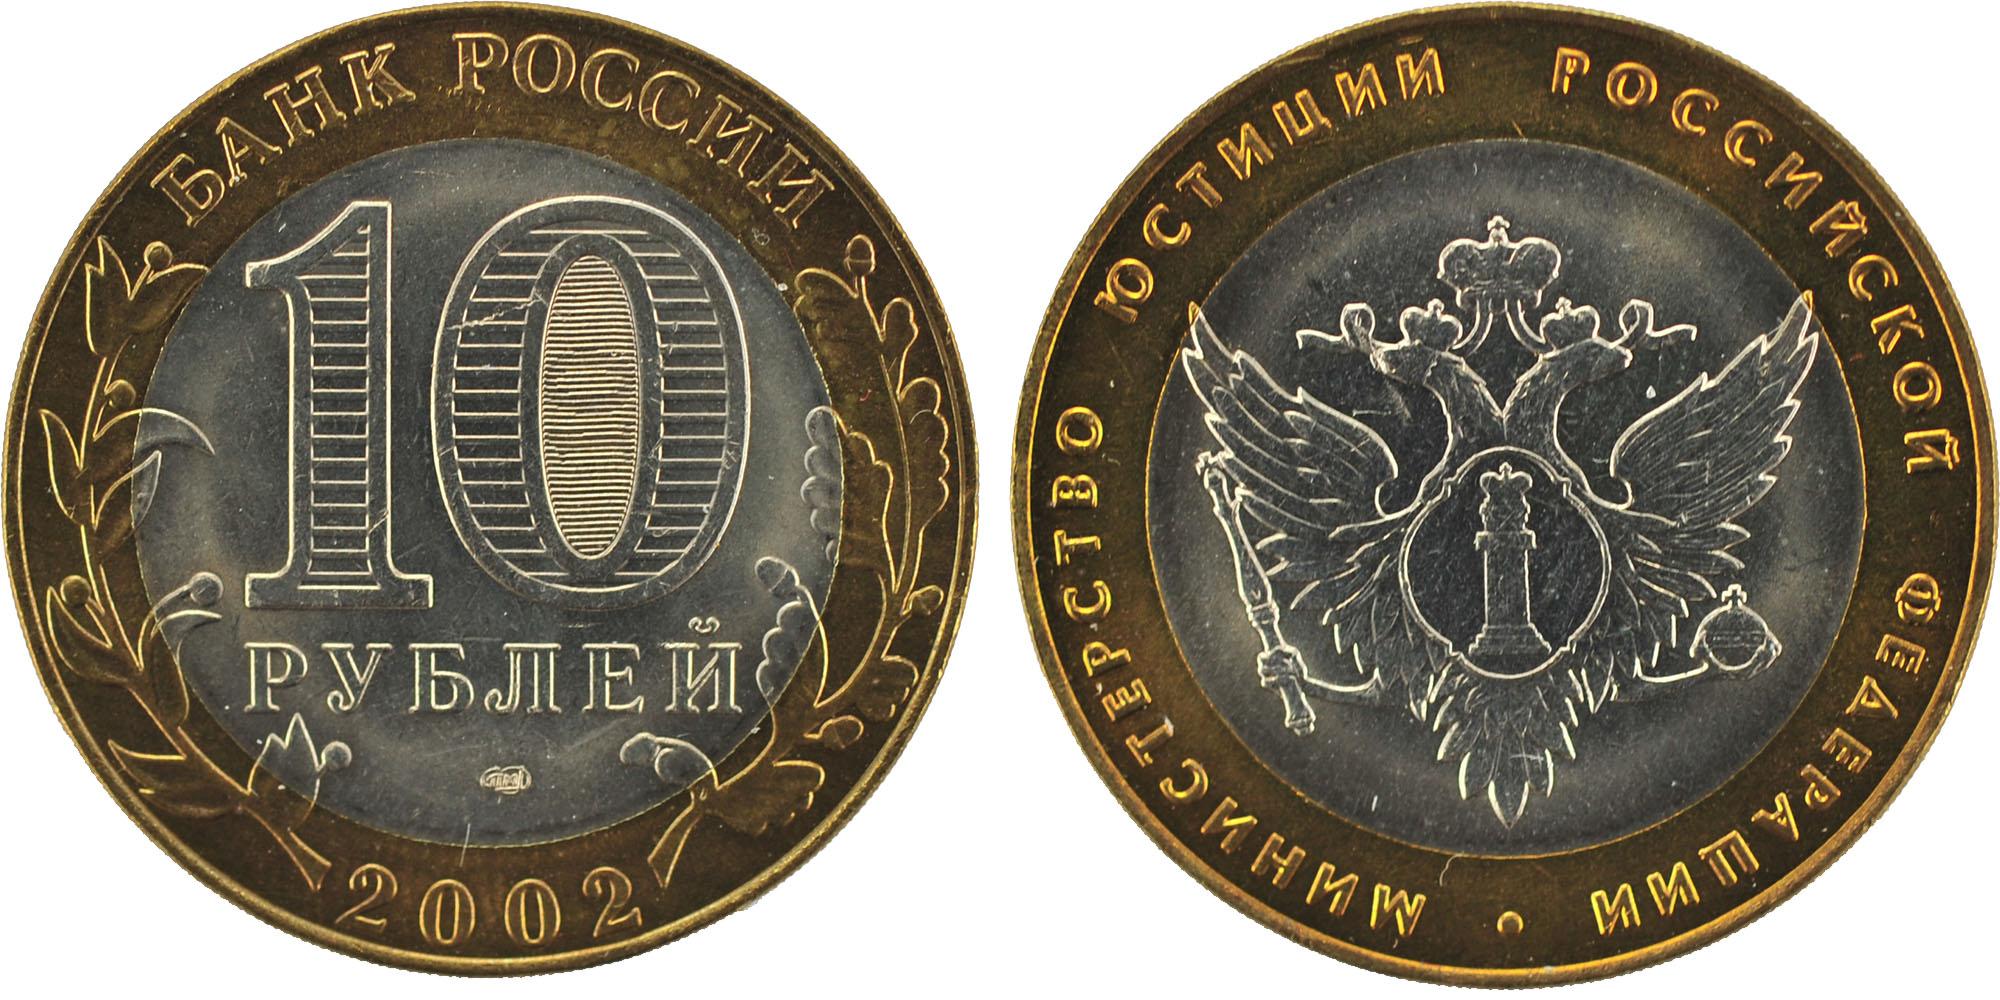 10 рублей 2002 года Министерство юстиций Российской Федерации